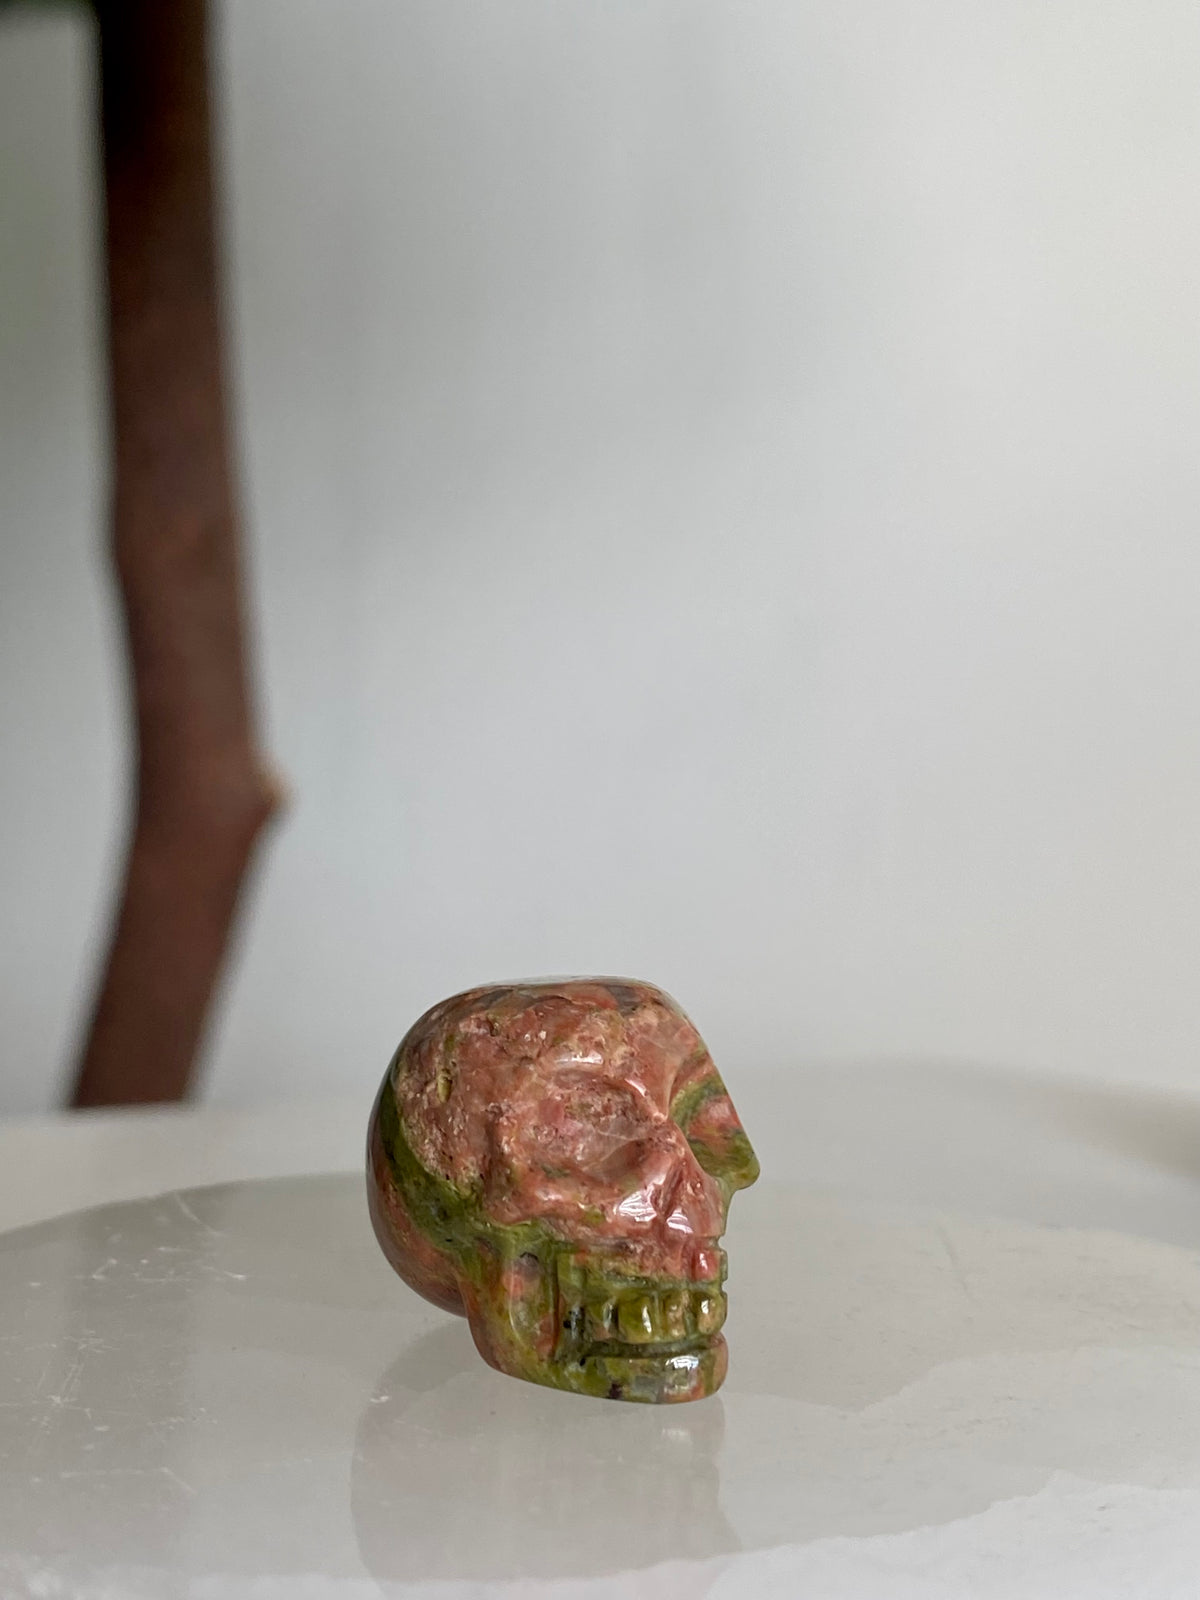 Mini Crystal Skulls